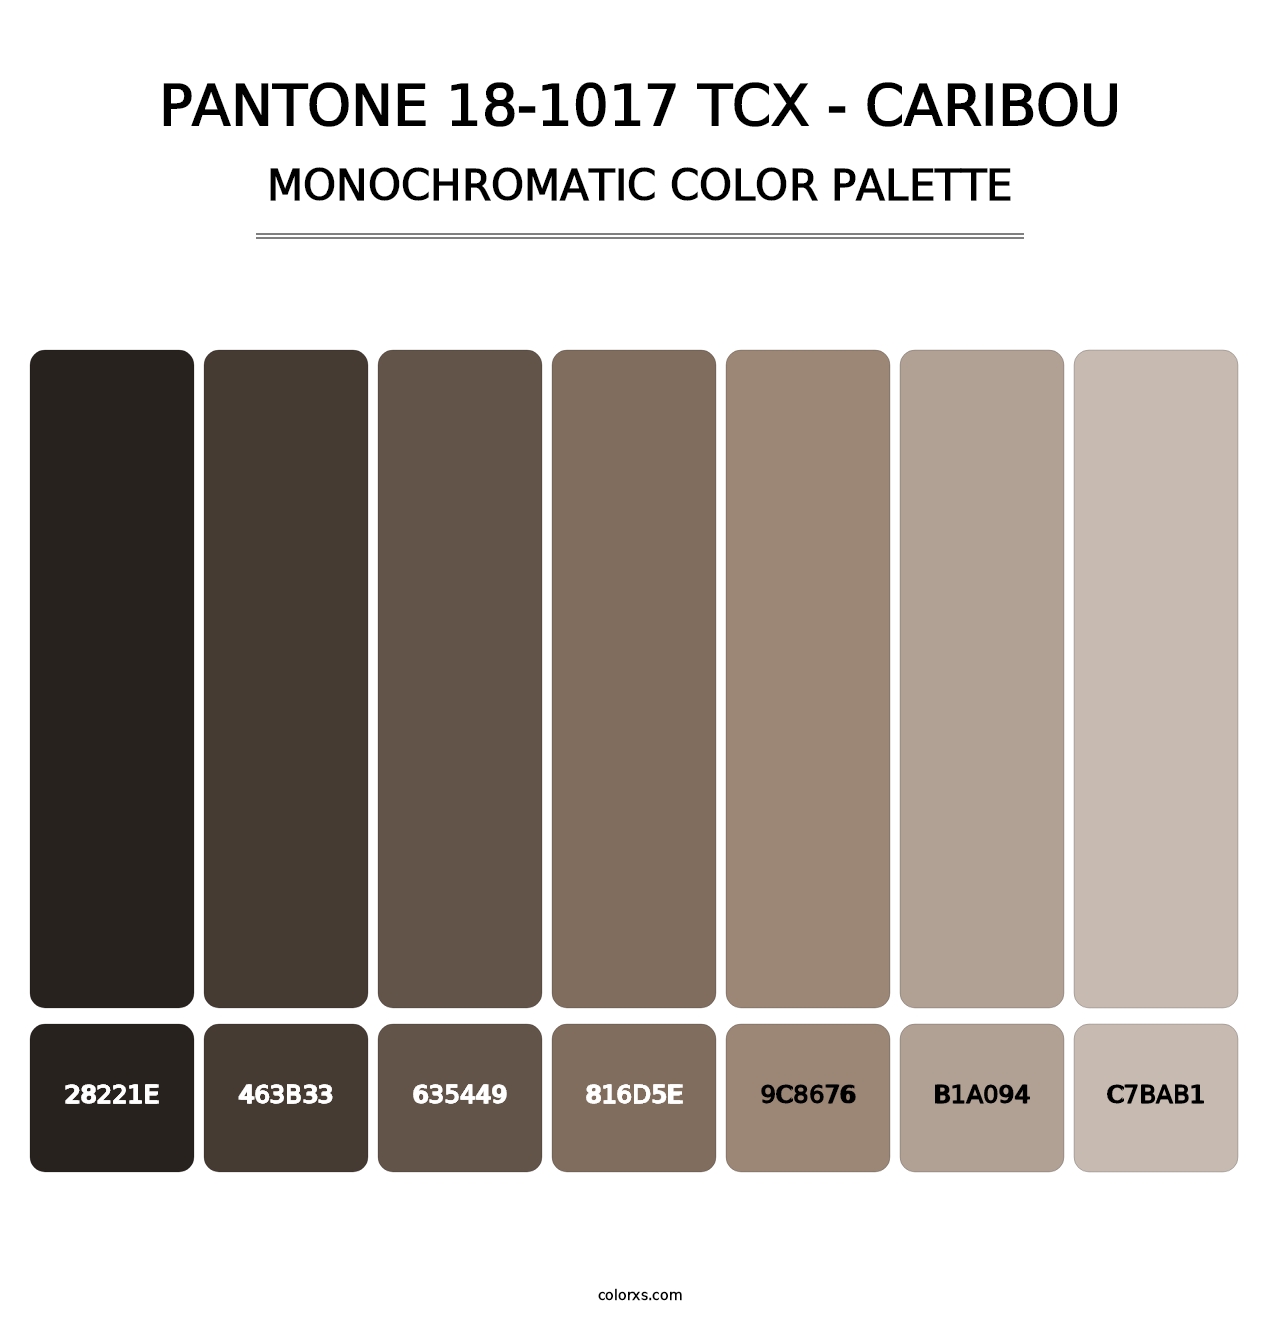 PANTONE 18-1017 TCX - Caribou - Monochromatic Color Palette